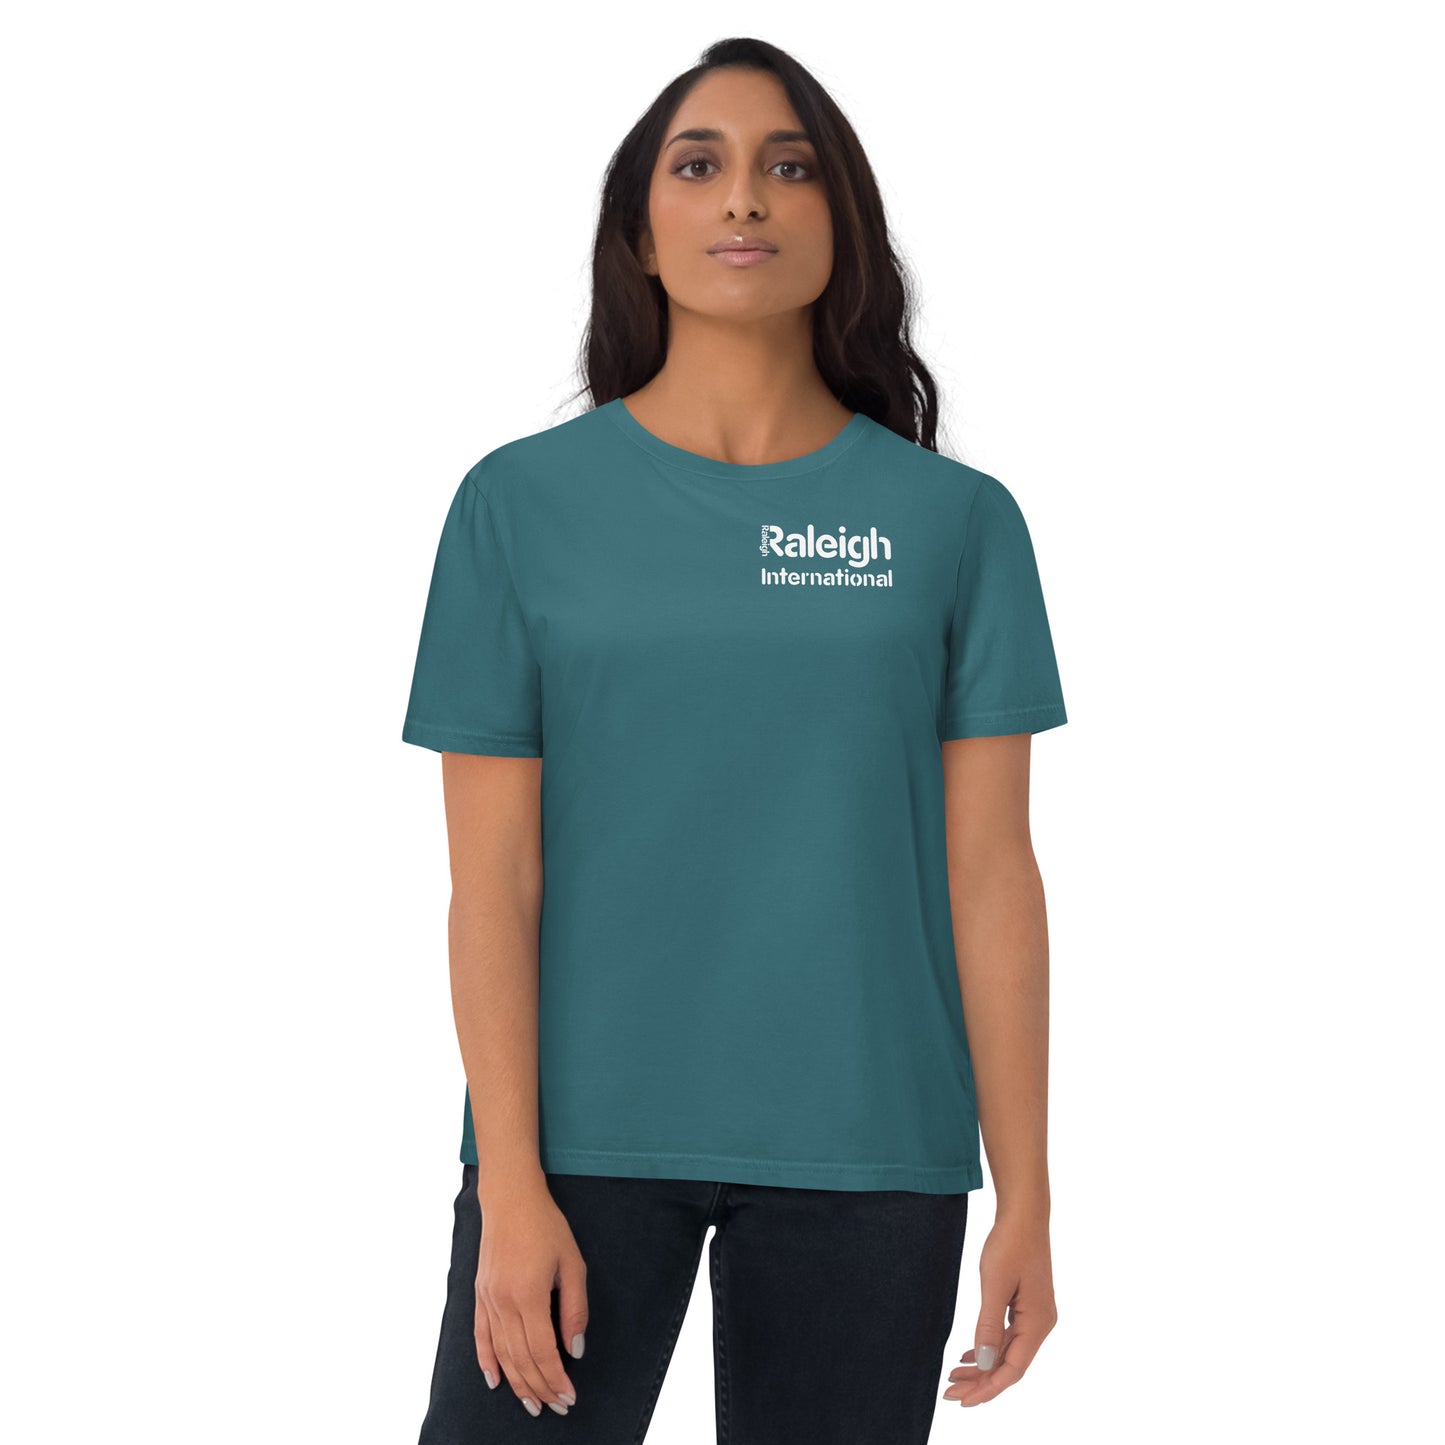 Raleigh unisex colour t-shirt (left pocket logo)